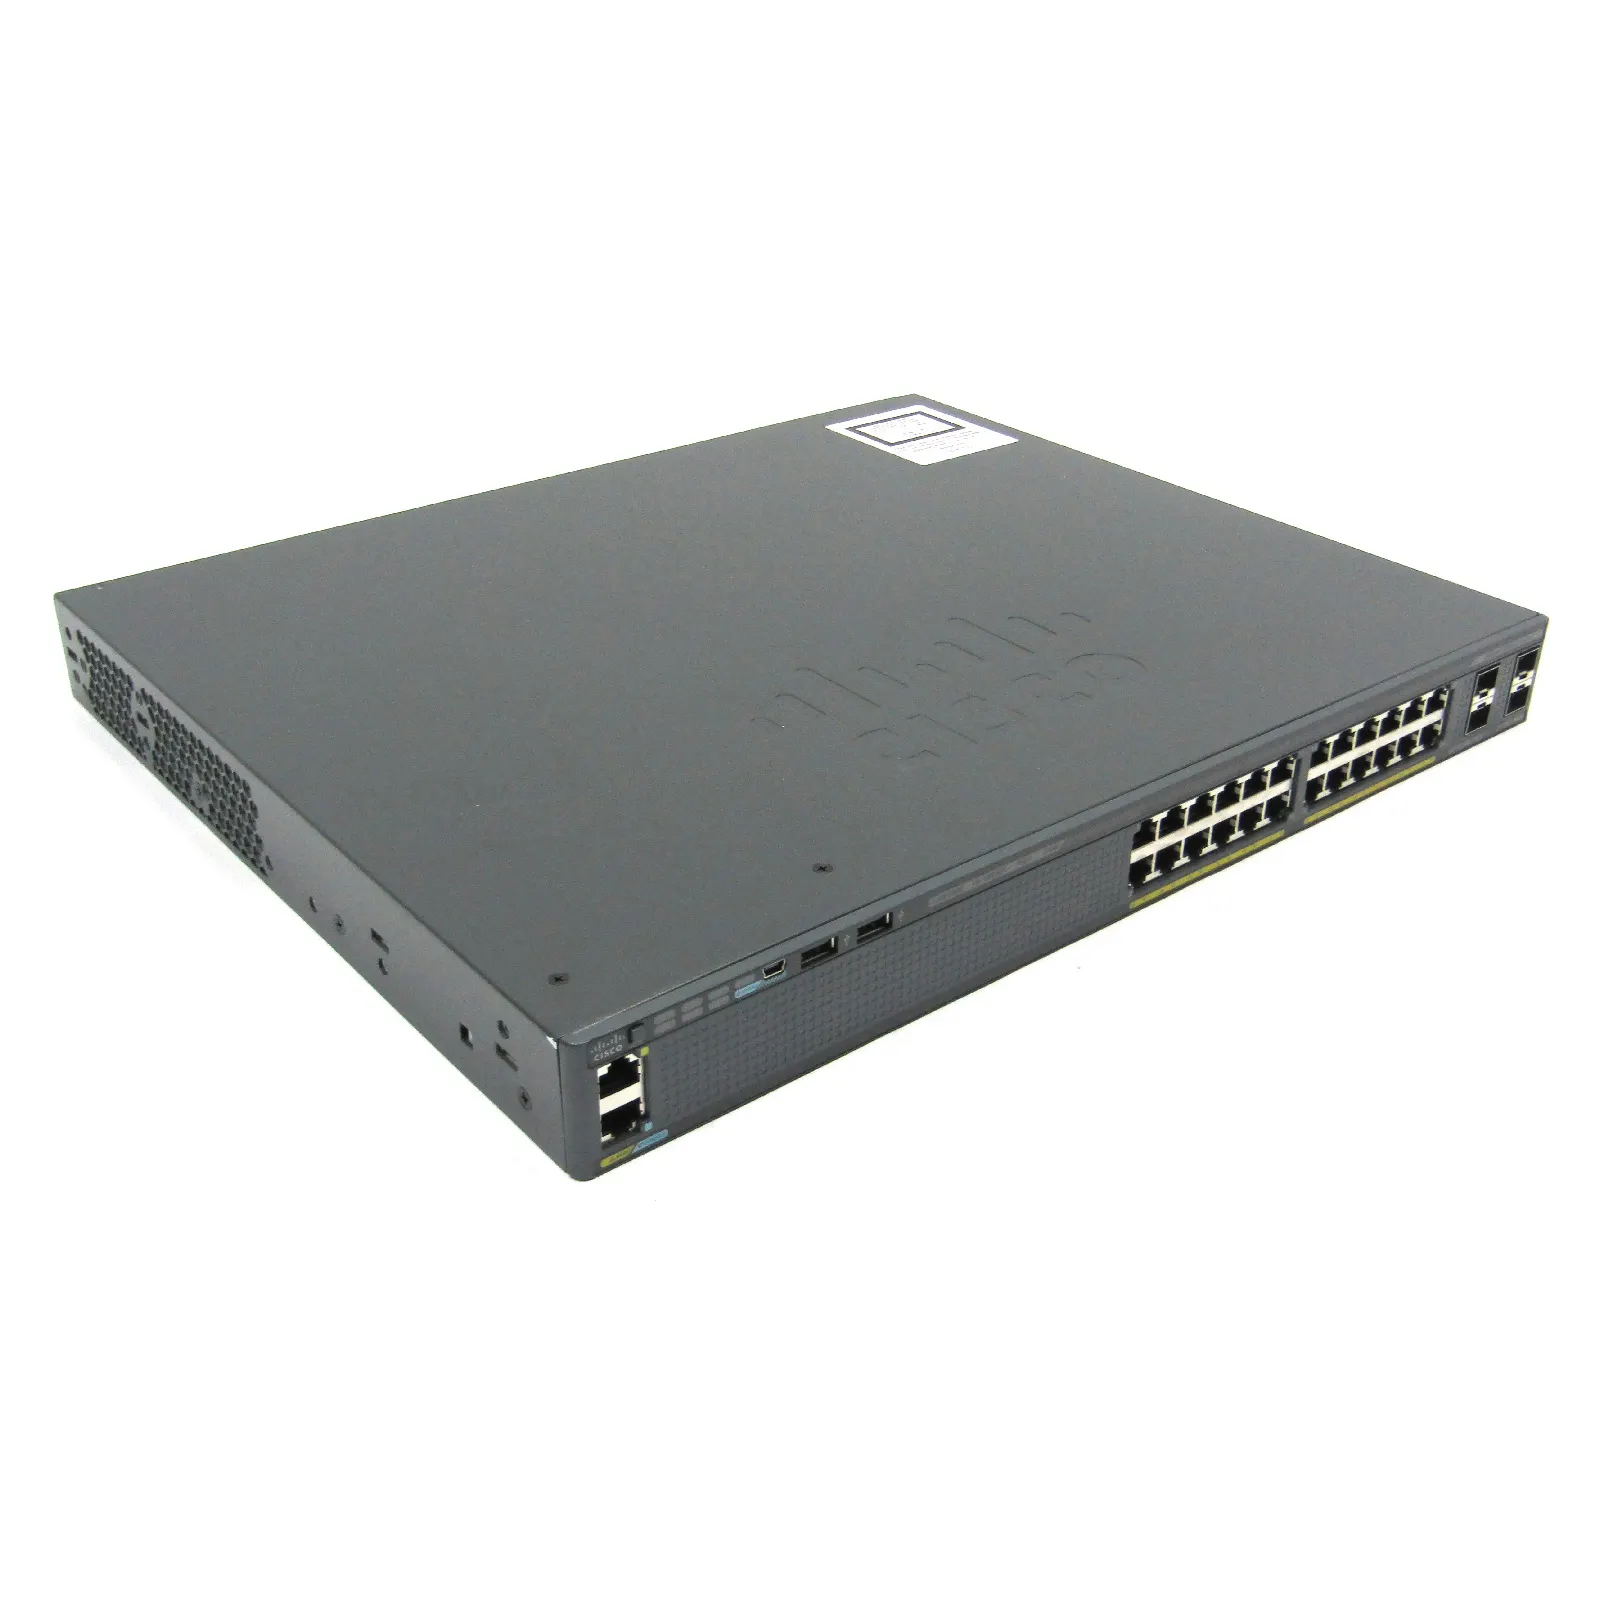 Nuevo y original conmutador Gigabit Cisco 2960X de 24 puertos de la serie 2. 2.